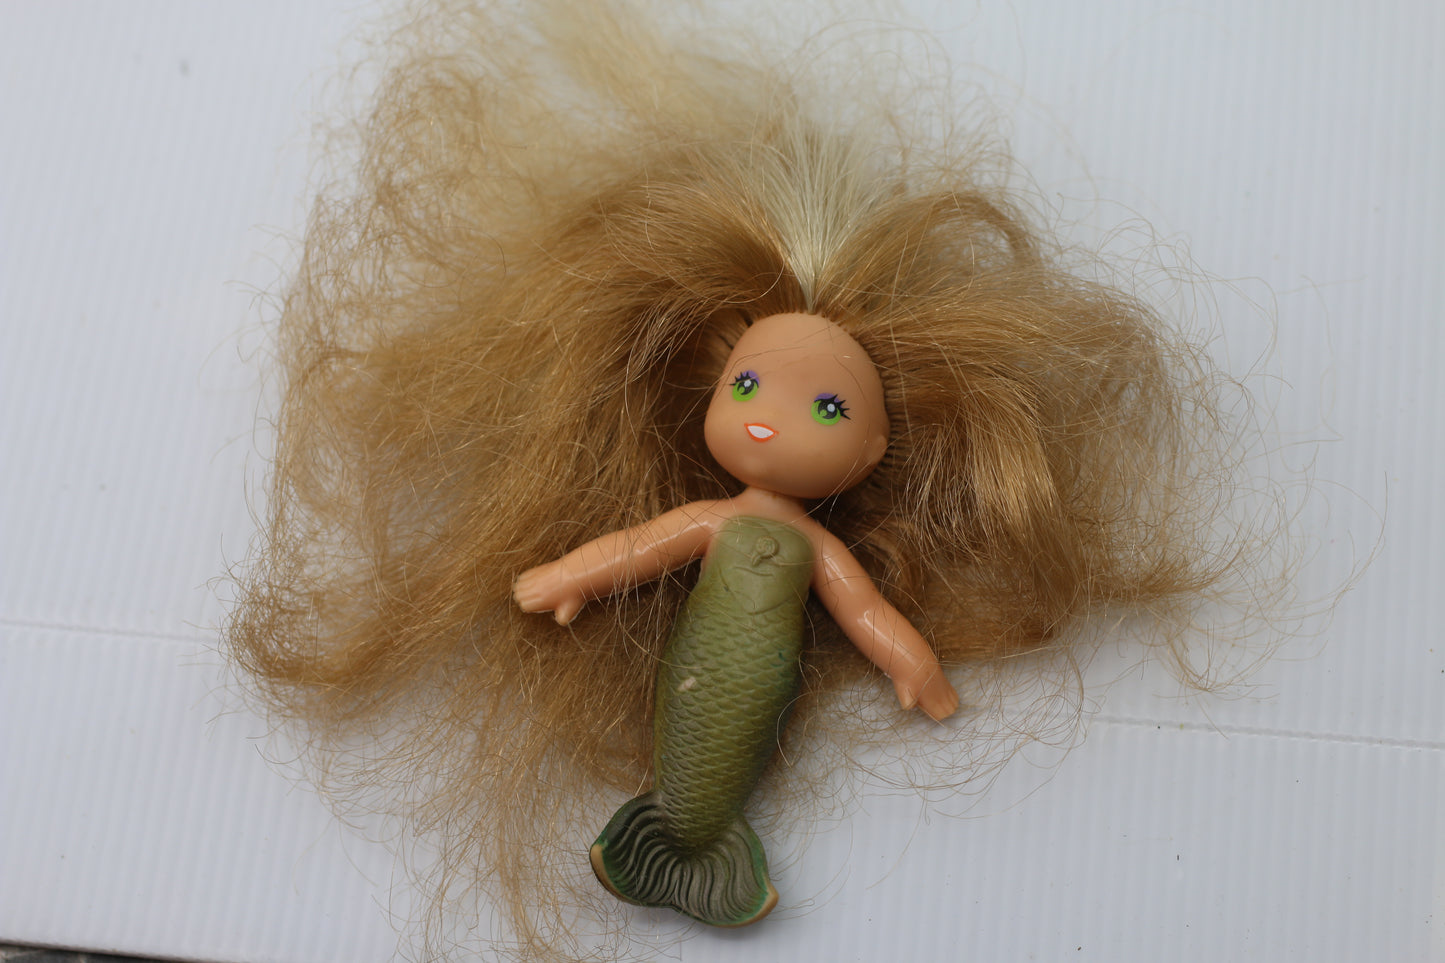 Sea Wees Sunny Mermaid Doll Golden Blonde Hair Kenner Vintage 1982 Turned Green